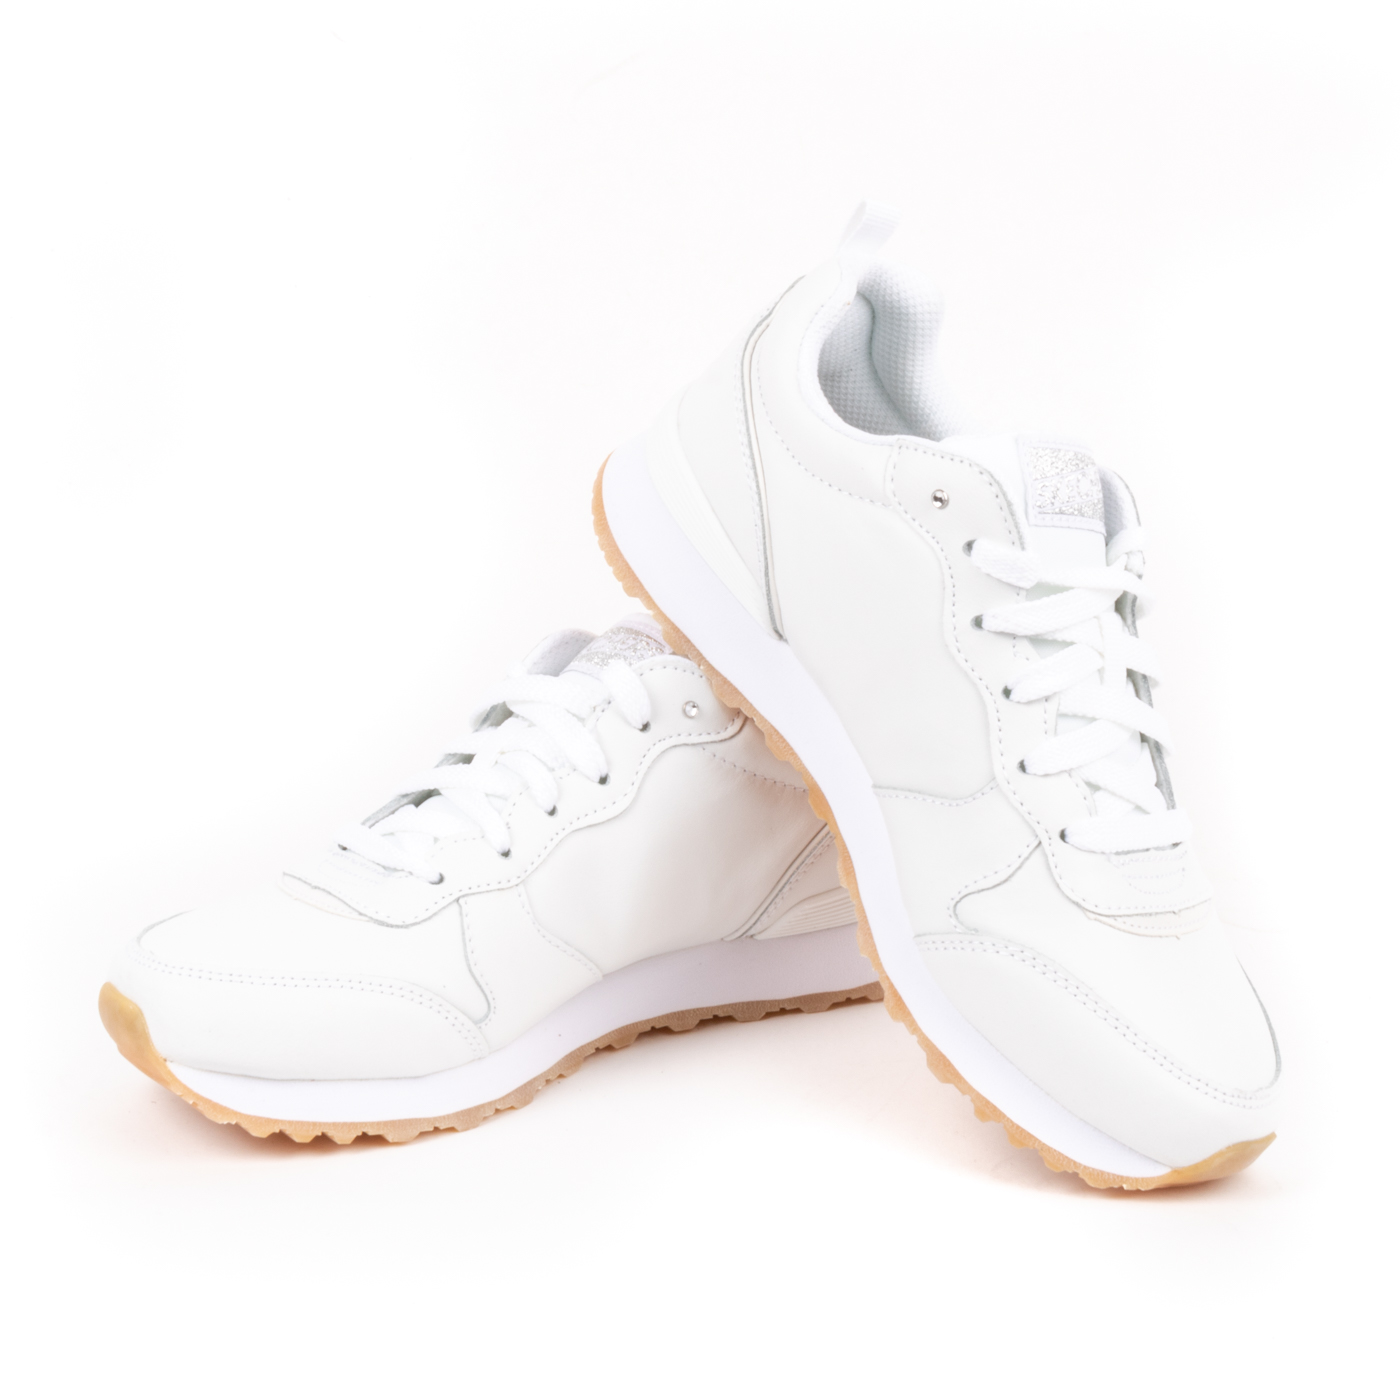 Skechers - Sneakers Donna stringate con brillantino e soletta in memory foam  - Bianco - MitShopping - Abbigliamento e scarpe